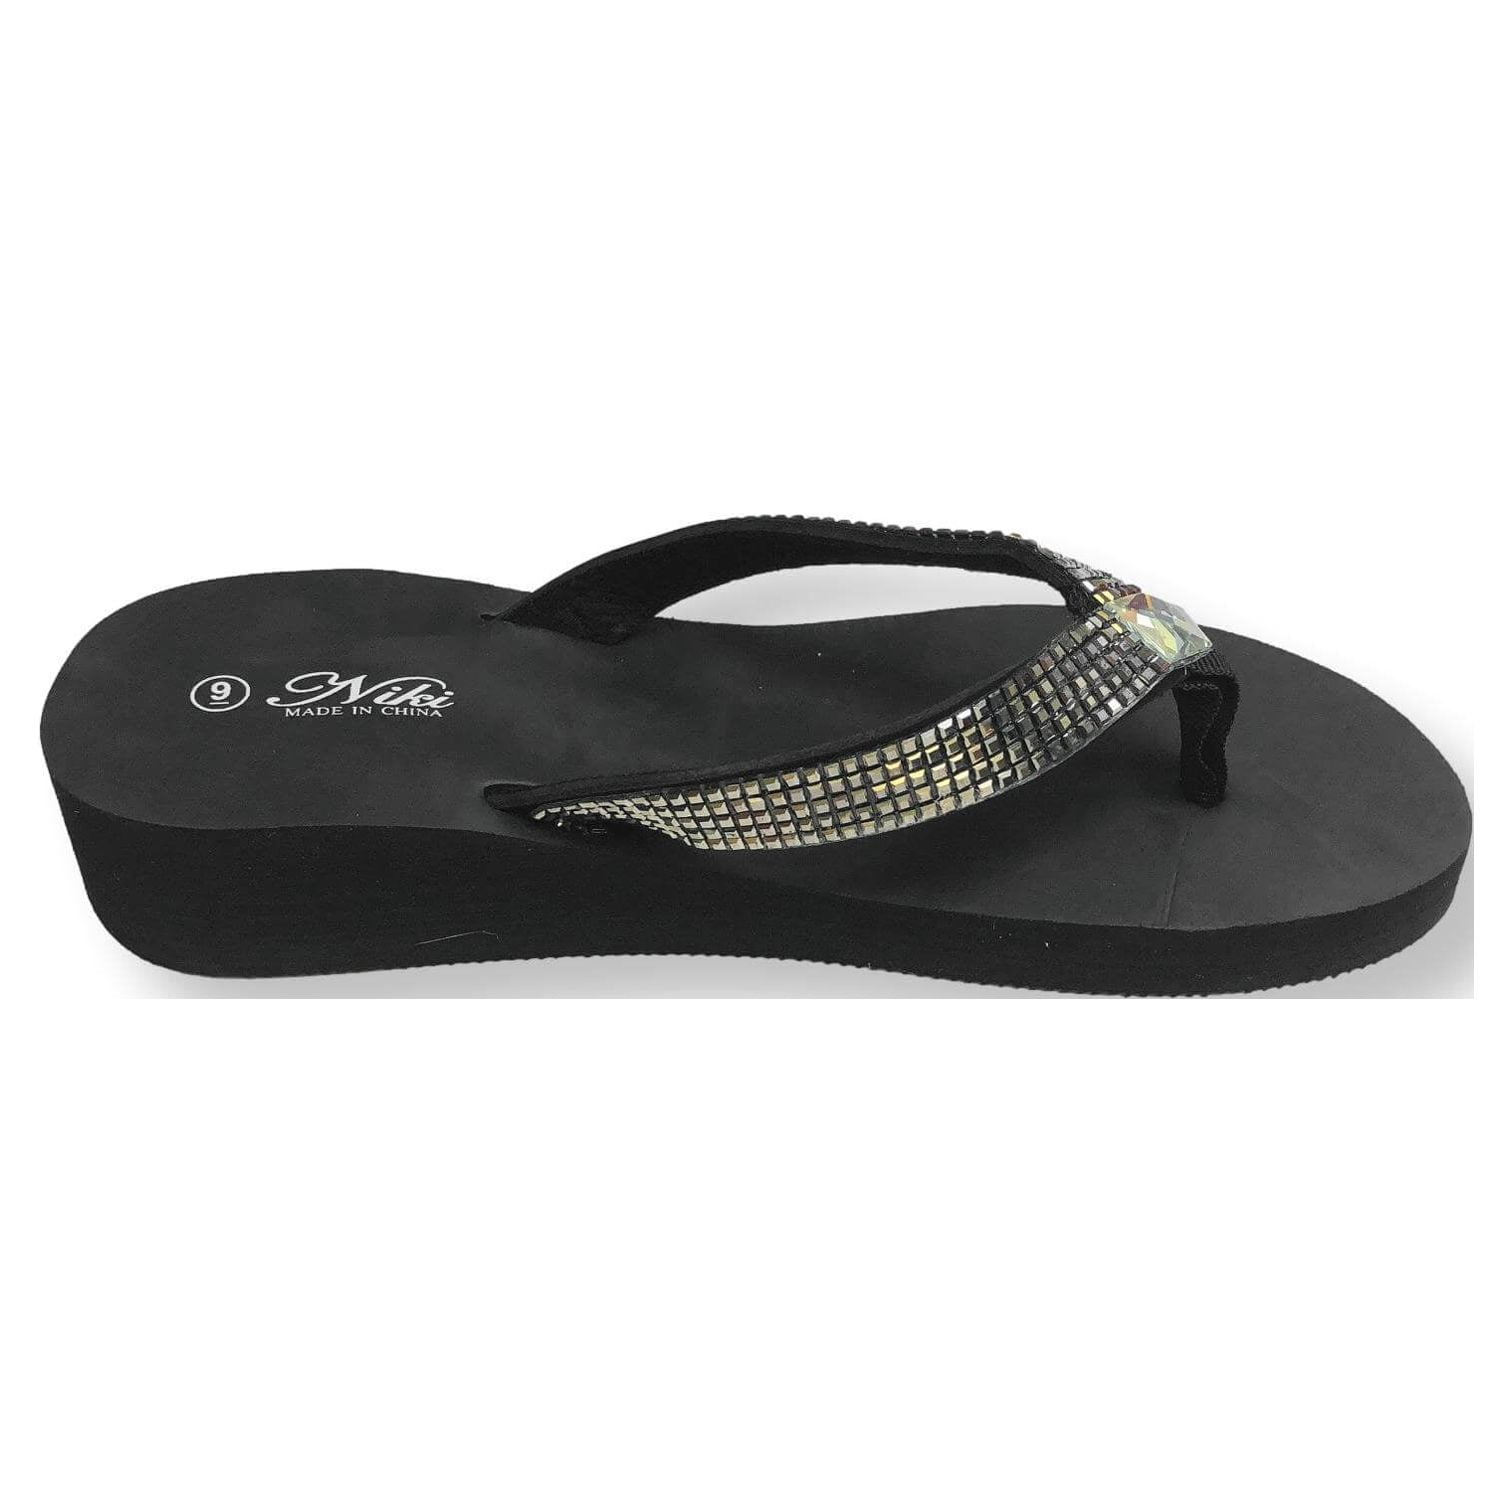 Sparkle Sandals - Shoes 1AB2CJ